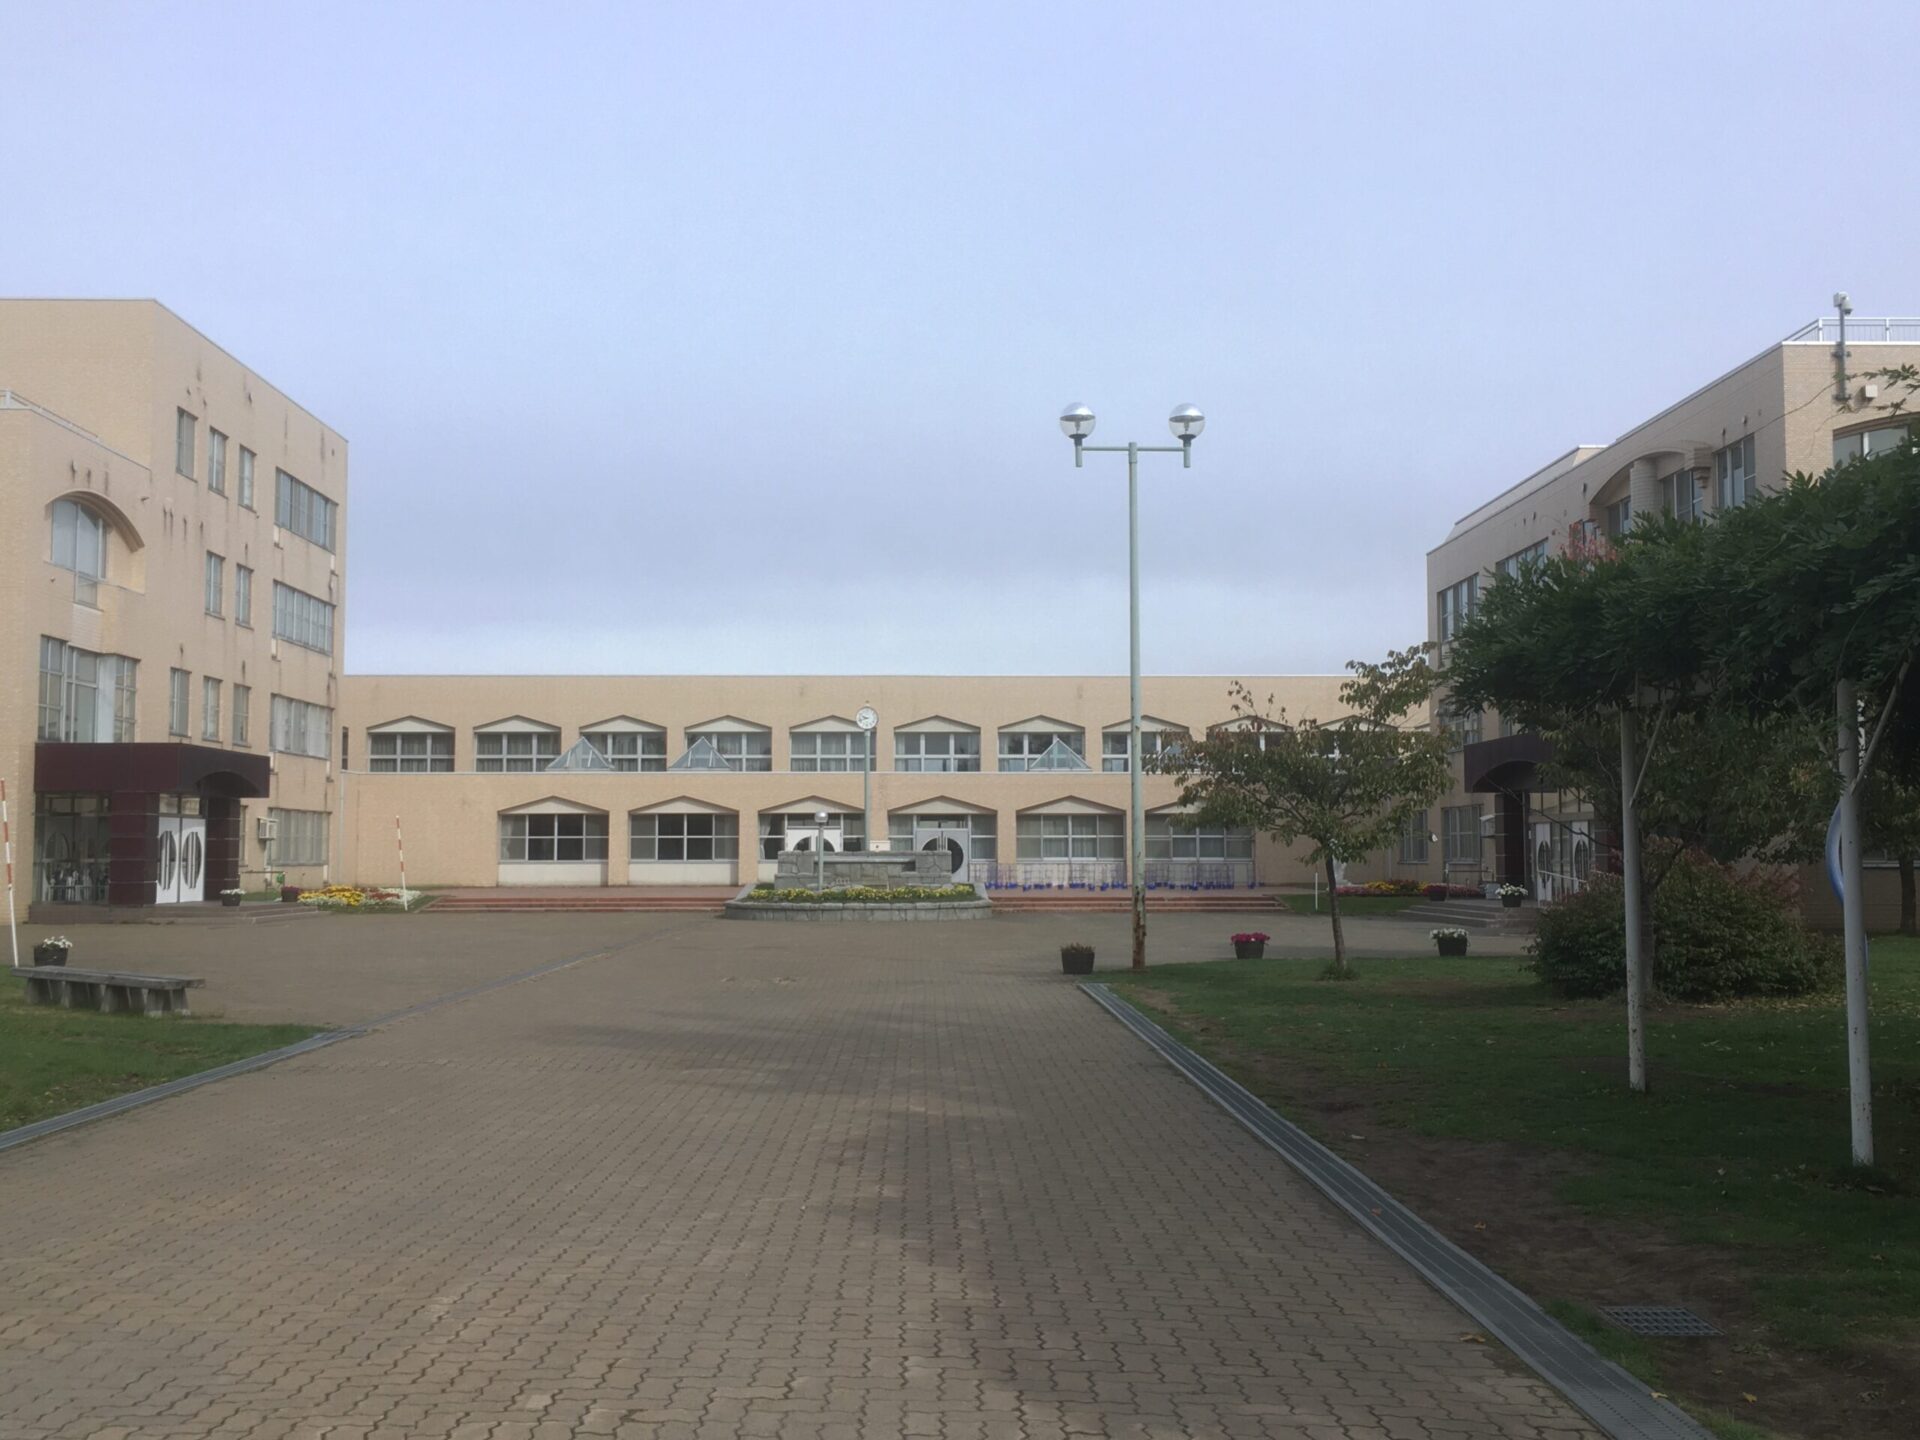 北海道教育大学附属札幌中学校